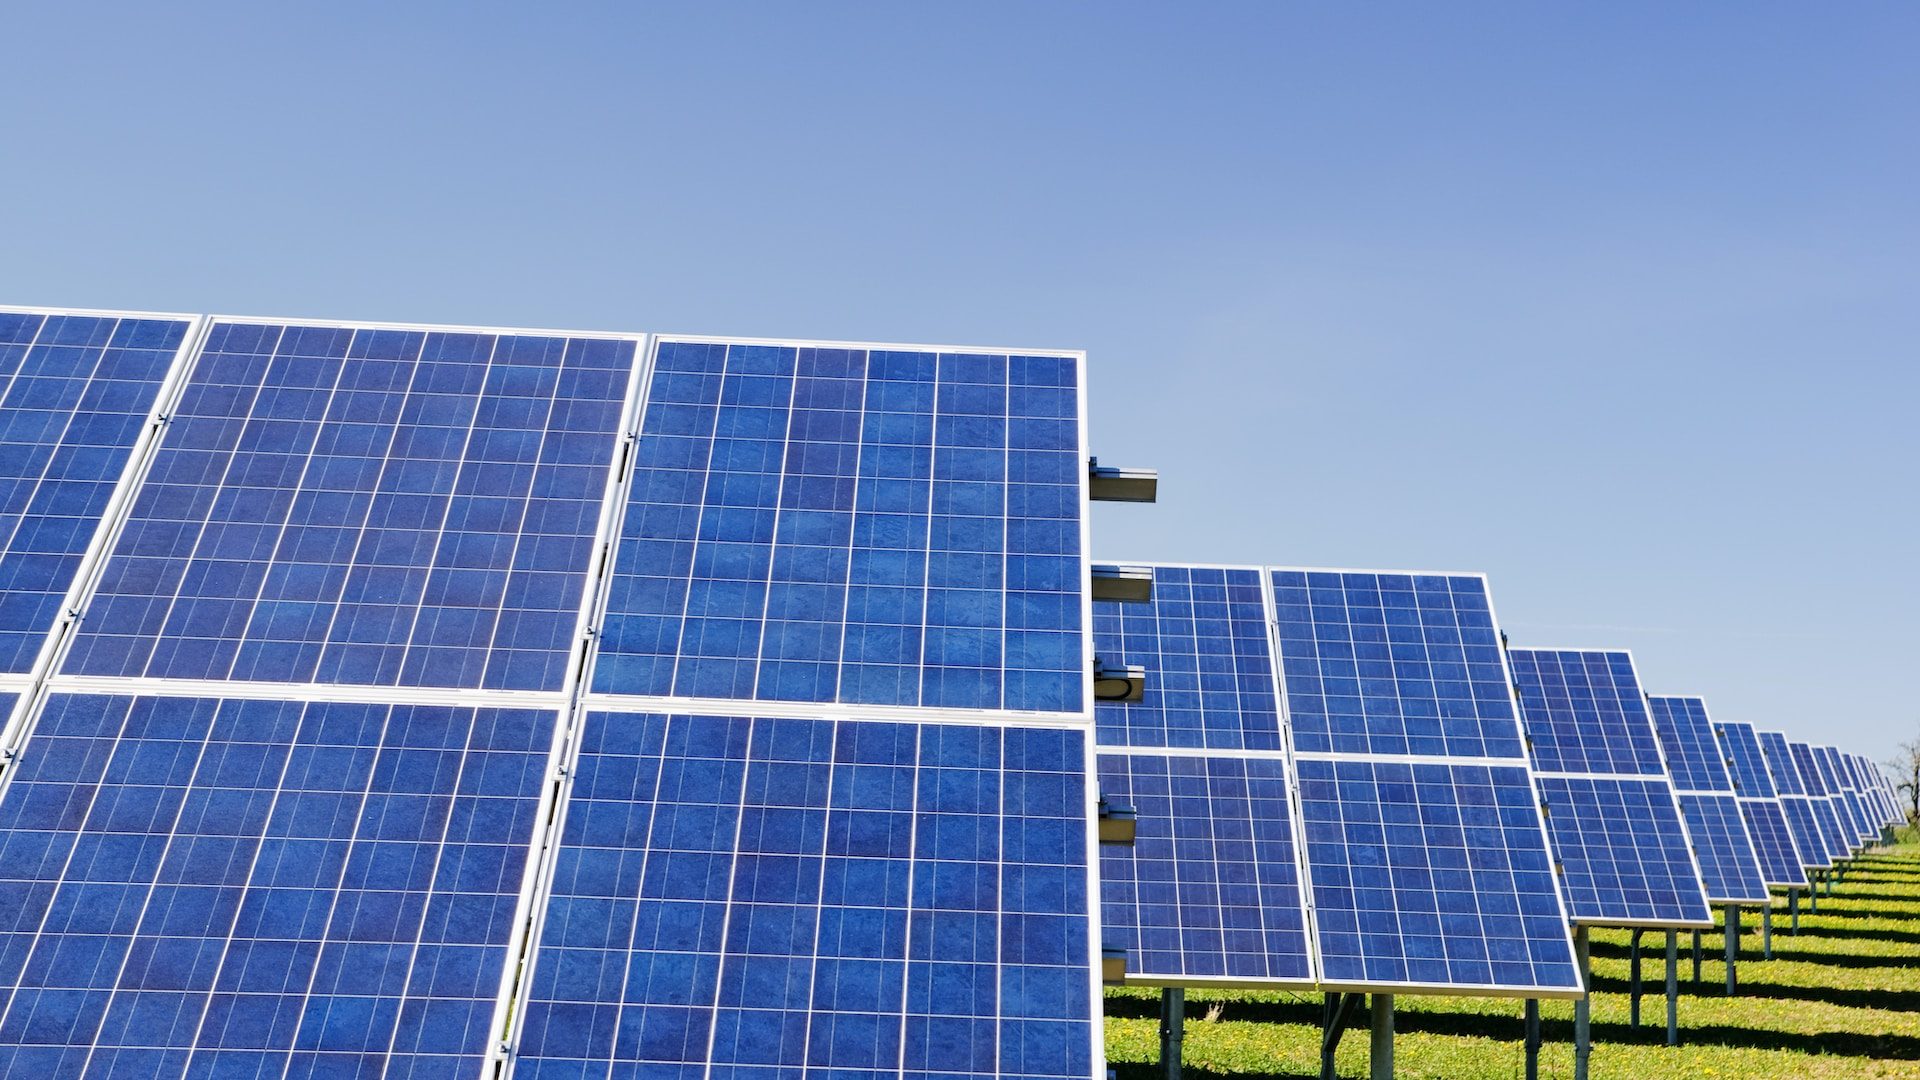 Rinnovabili • Energie rinnovabili 2018: Italia 4a al mondo per fotovoltaico procapite